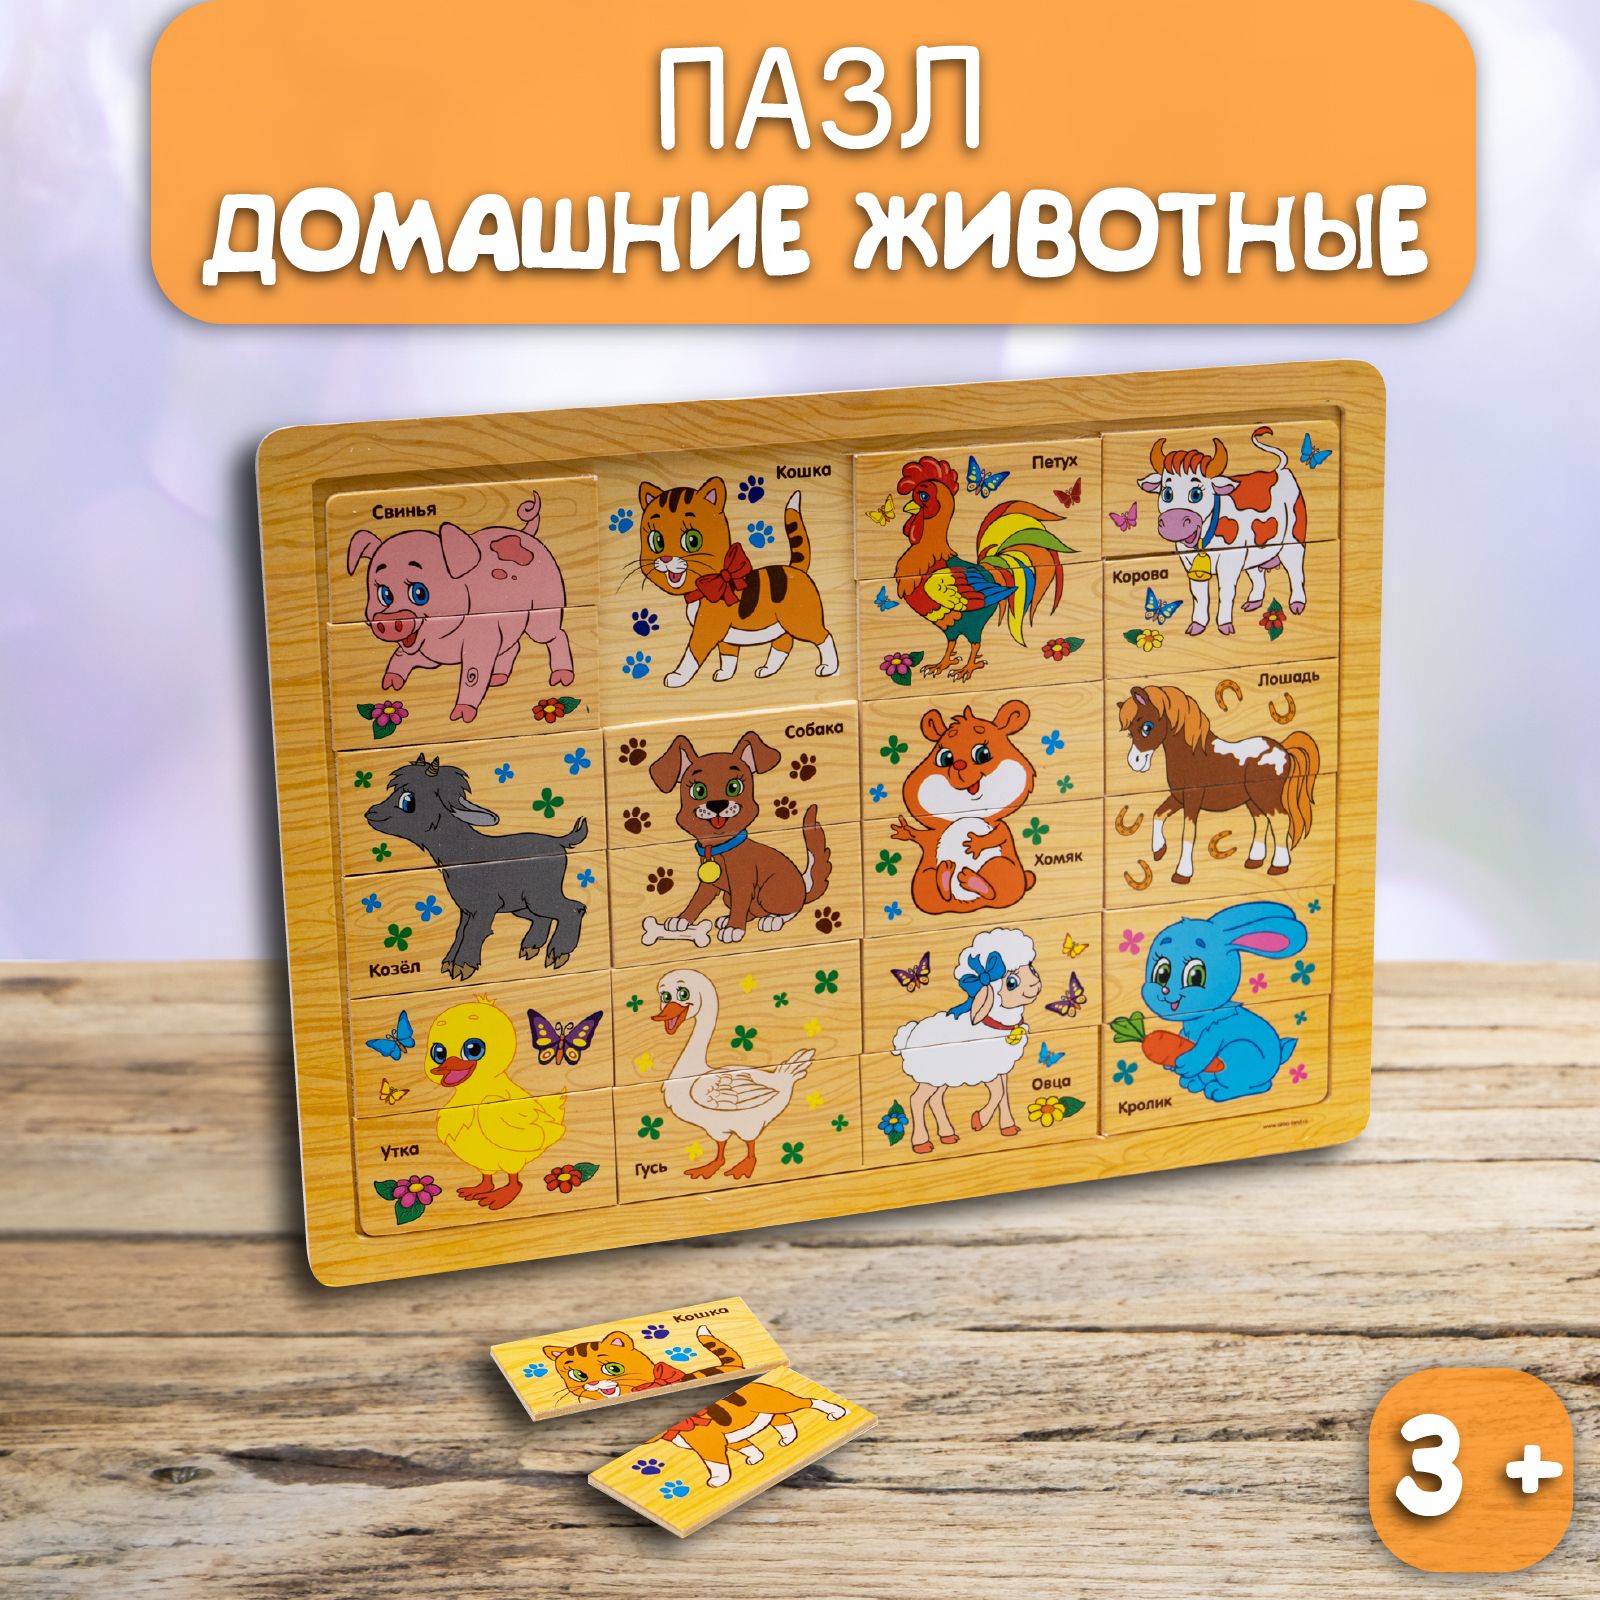 Игра с липучками Домашние животные 04302 Русский стиль